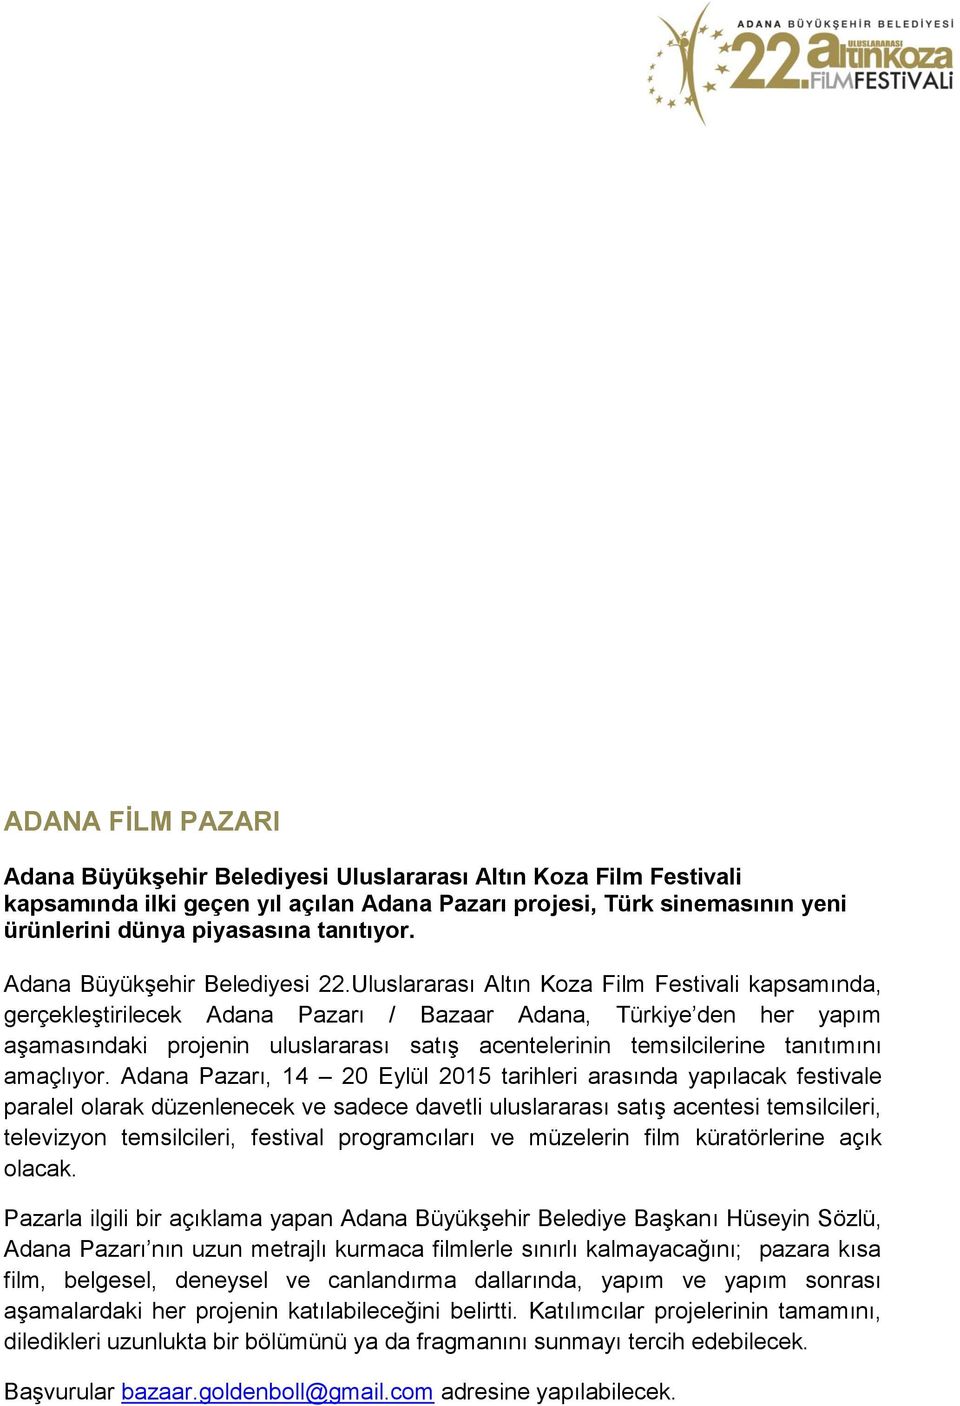 Uluslararası Altın Koza Film Festivali kapsamında, gerçekleştirilecek Adana Pazarı / Bazaar Adana, Türkiye den her yapım aşamasındaki projenin uluslararası satış acentelerinin temsilcilerine